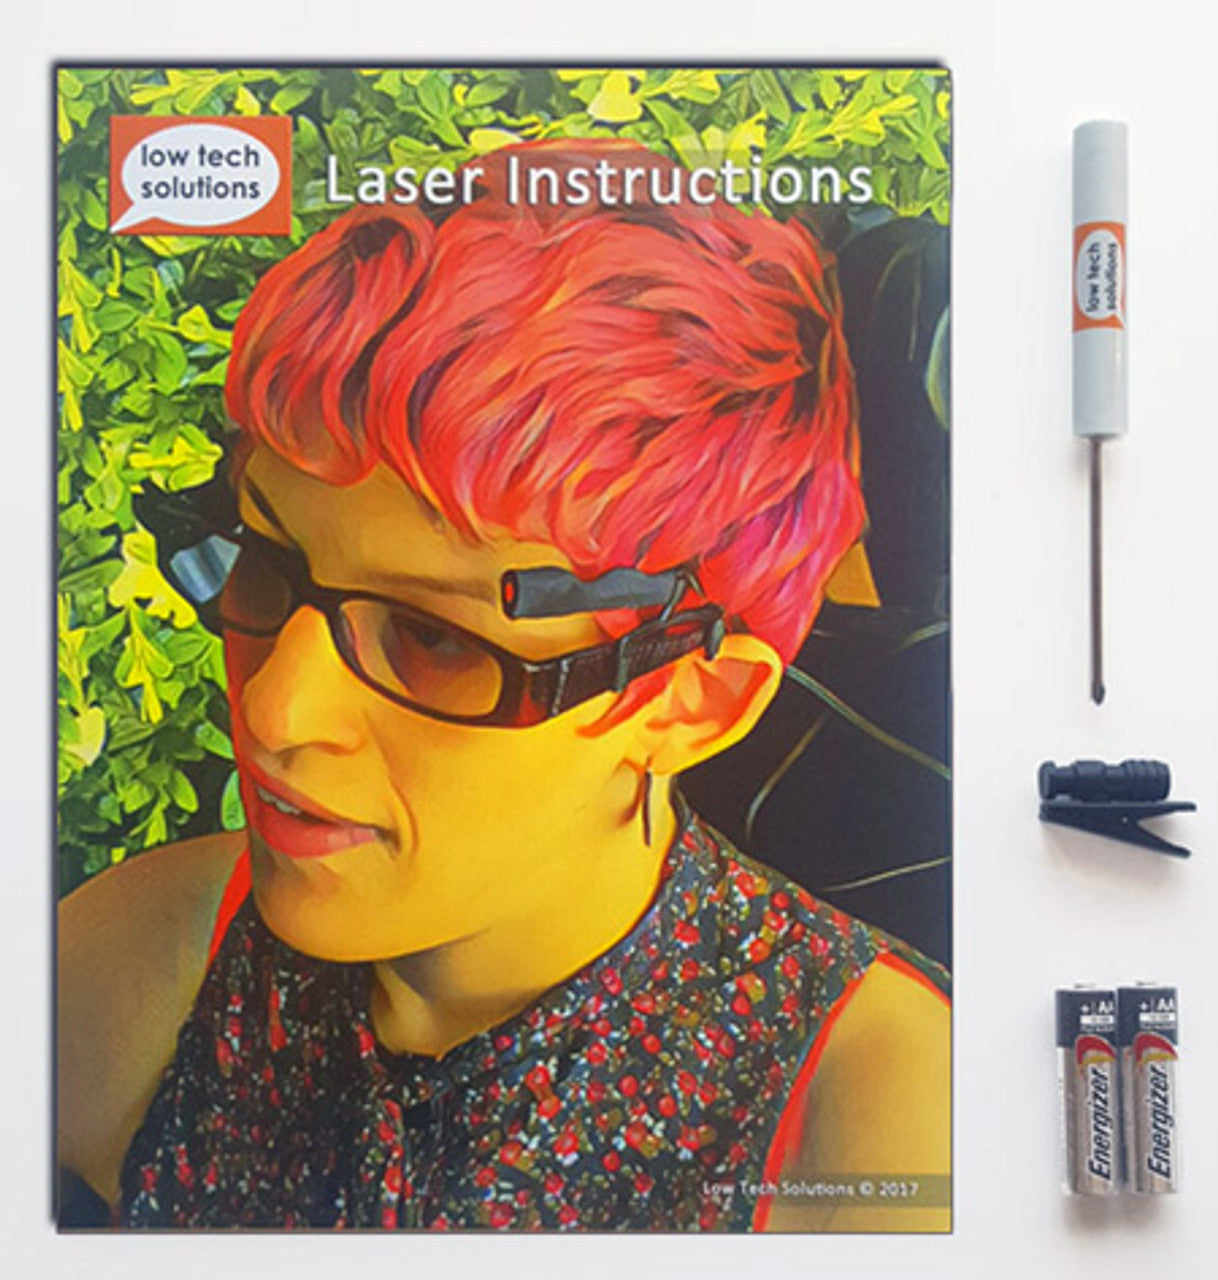 LaserWriter (Eyeglass Mounted)